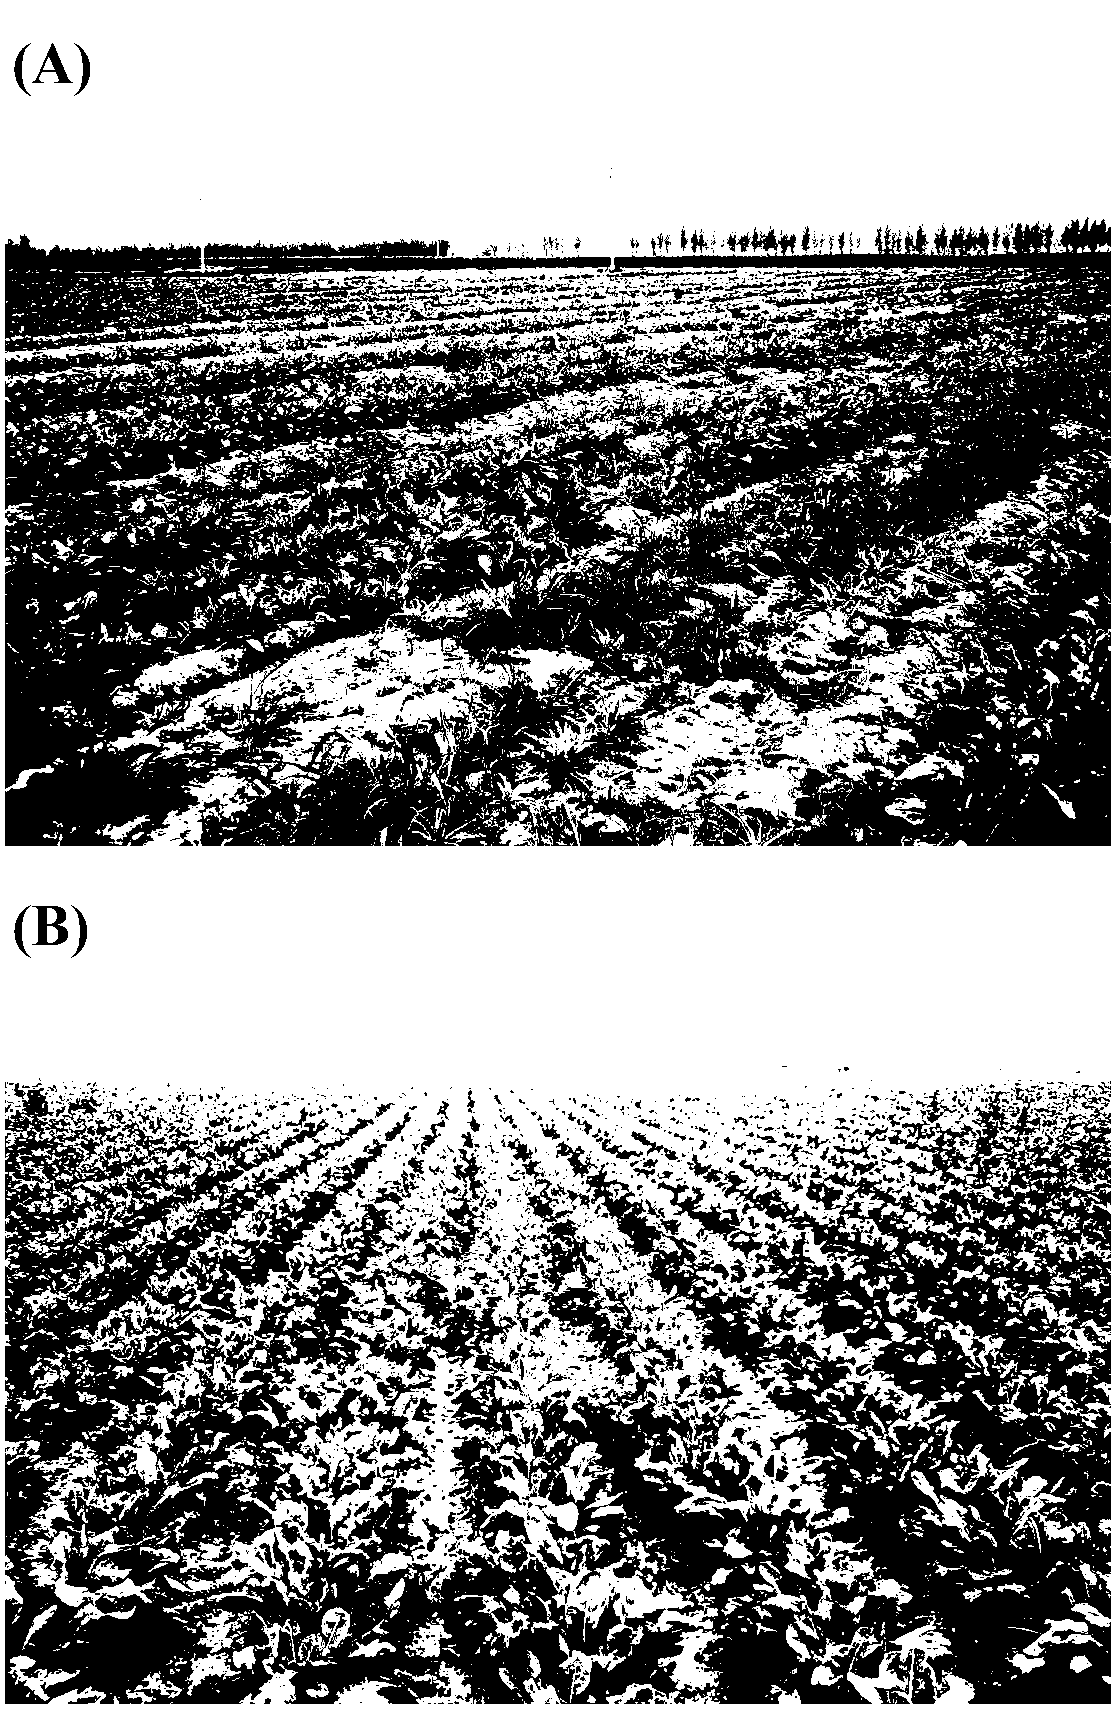 Technology of planting woads in saline-alkali field